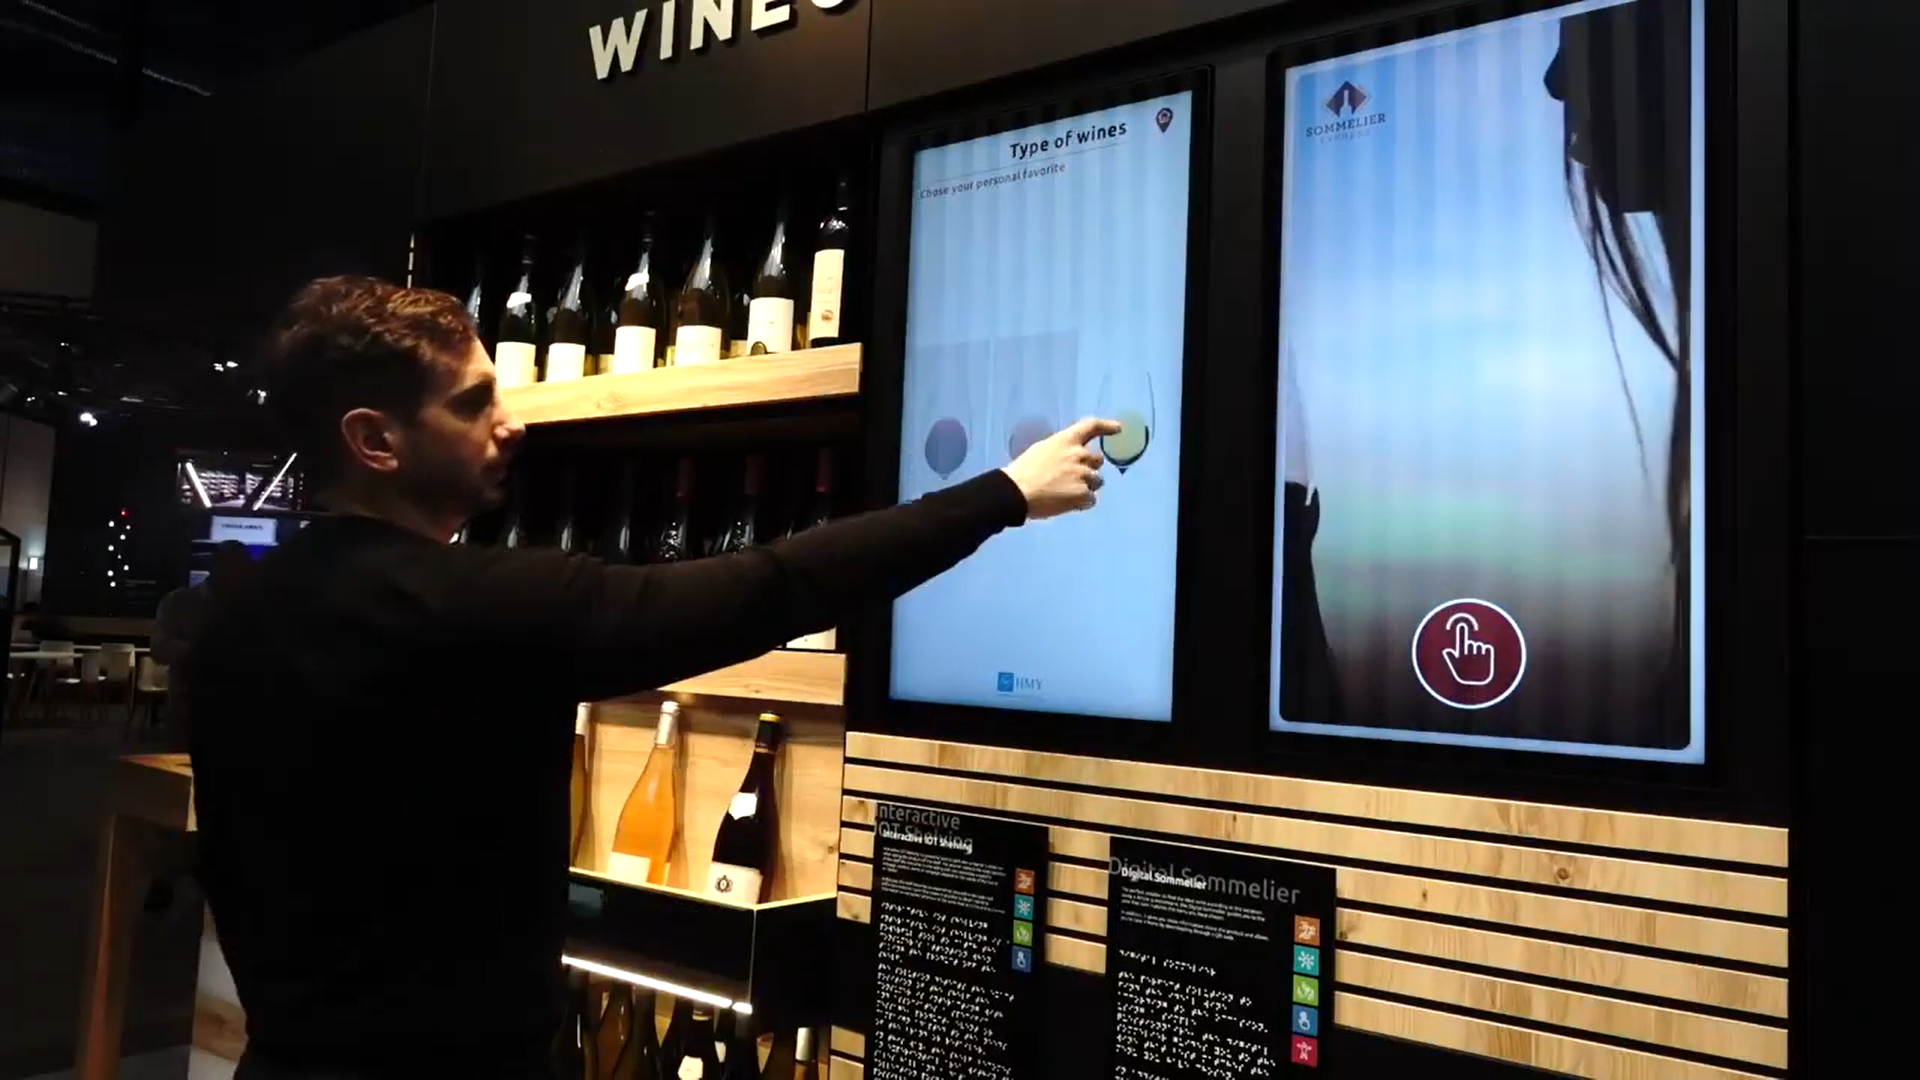 recomendador de vinos mediante inteligencia artificial